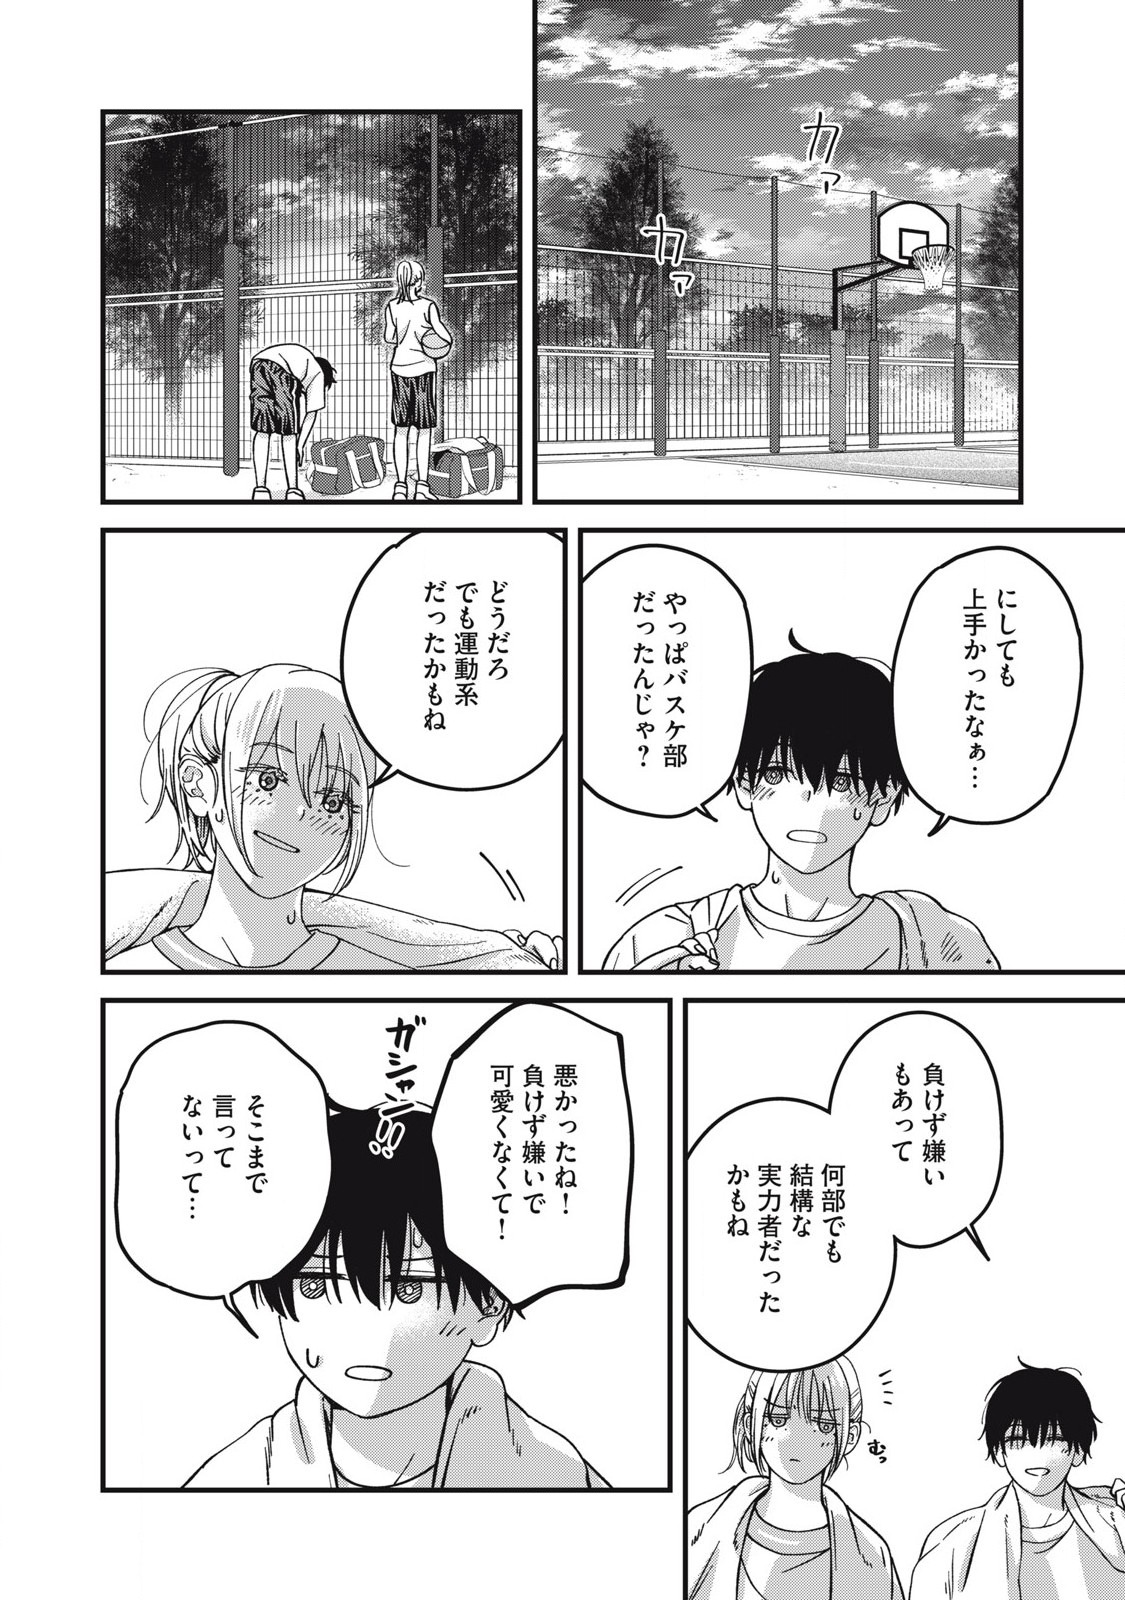 Otona ni Narenai Bokura wa - Chapter 10 - Page 12